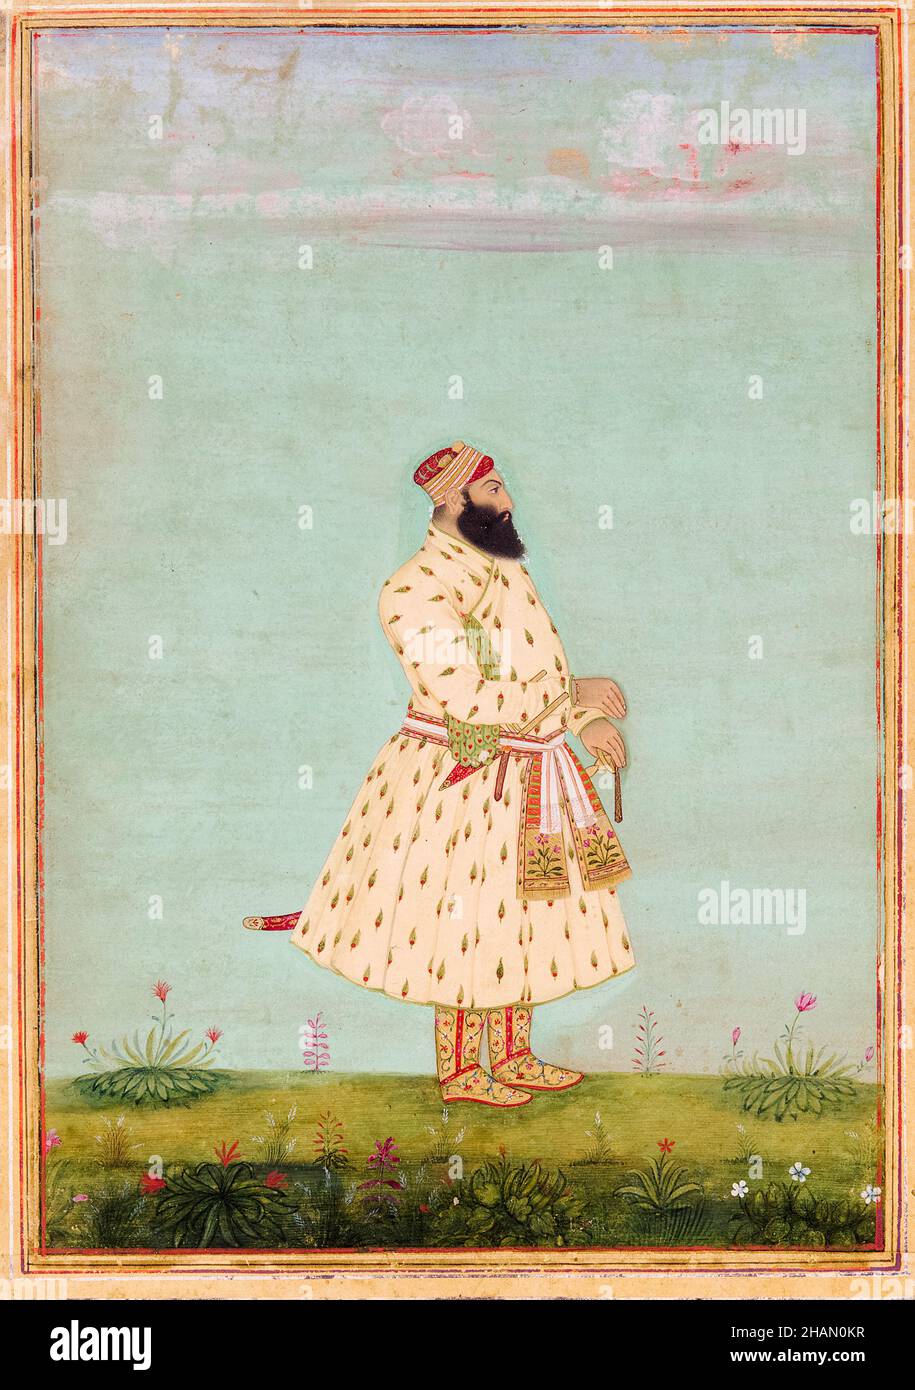 Safdar Jang (circa 1708-1754), Nawab di Oudh (1739-1754), ritratto pittura, 1710-1750 Foto Stock